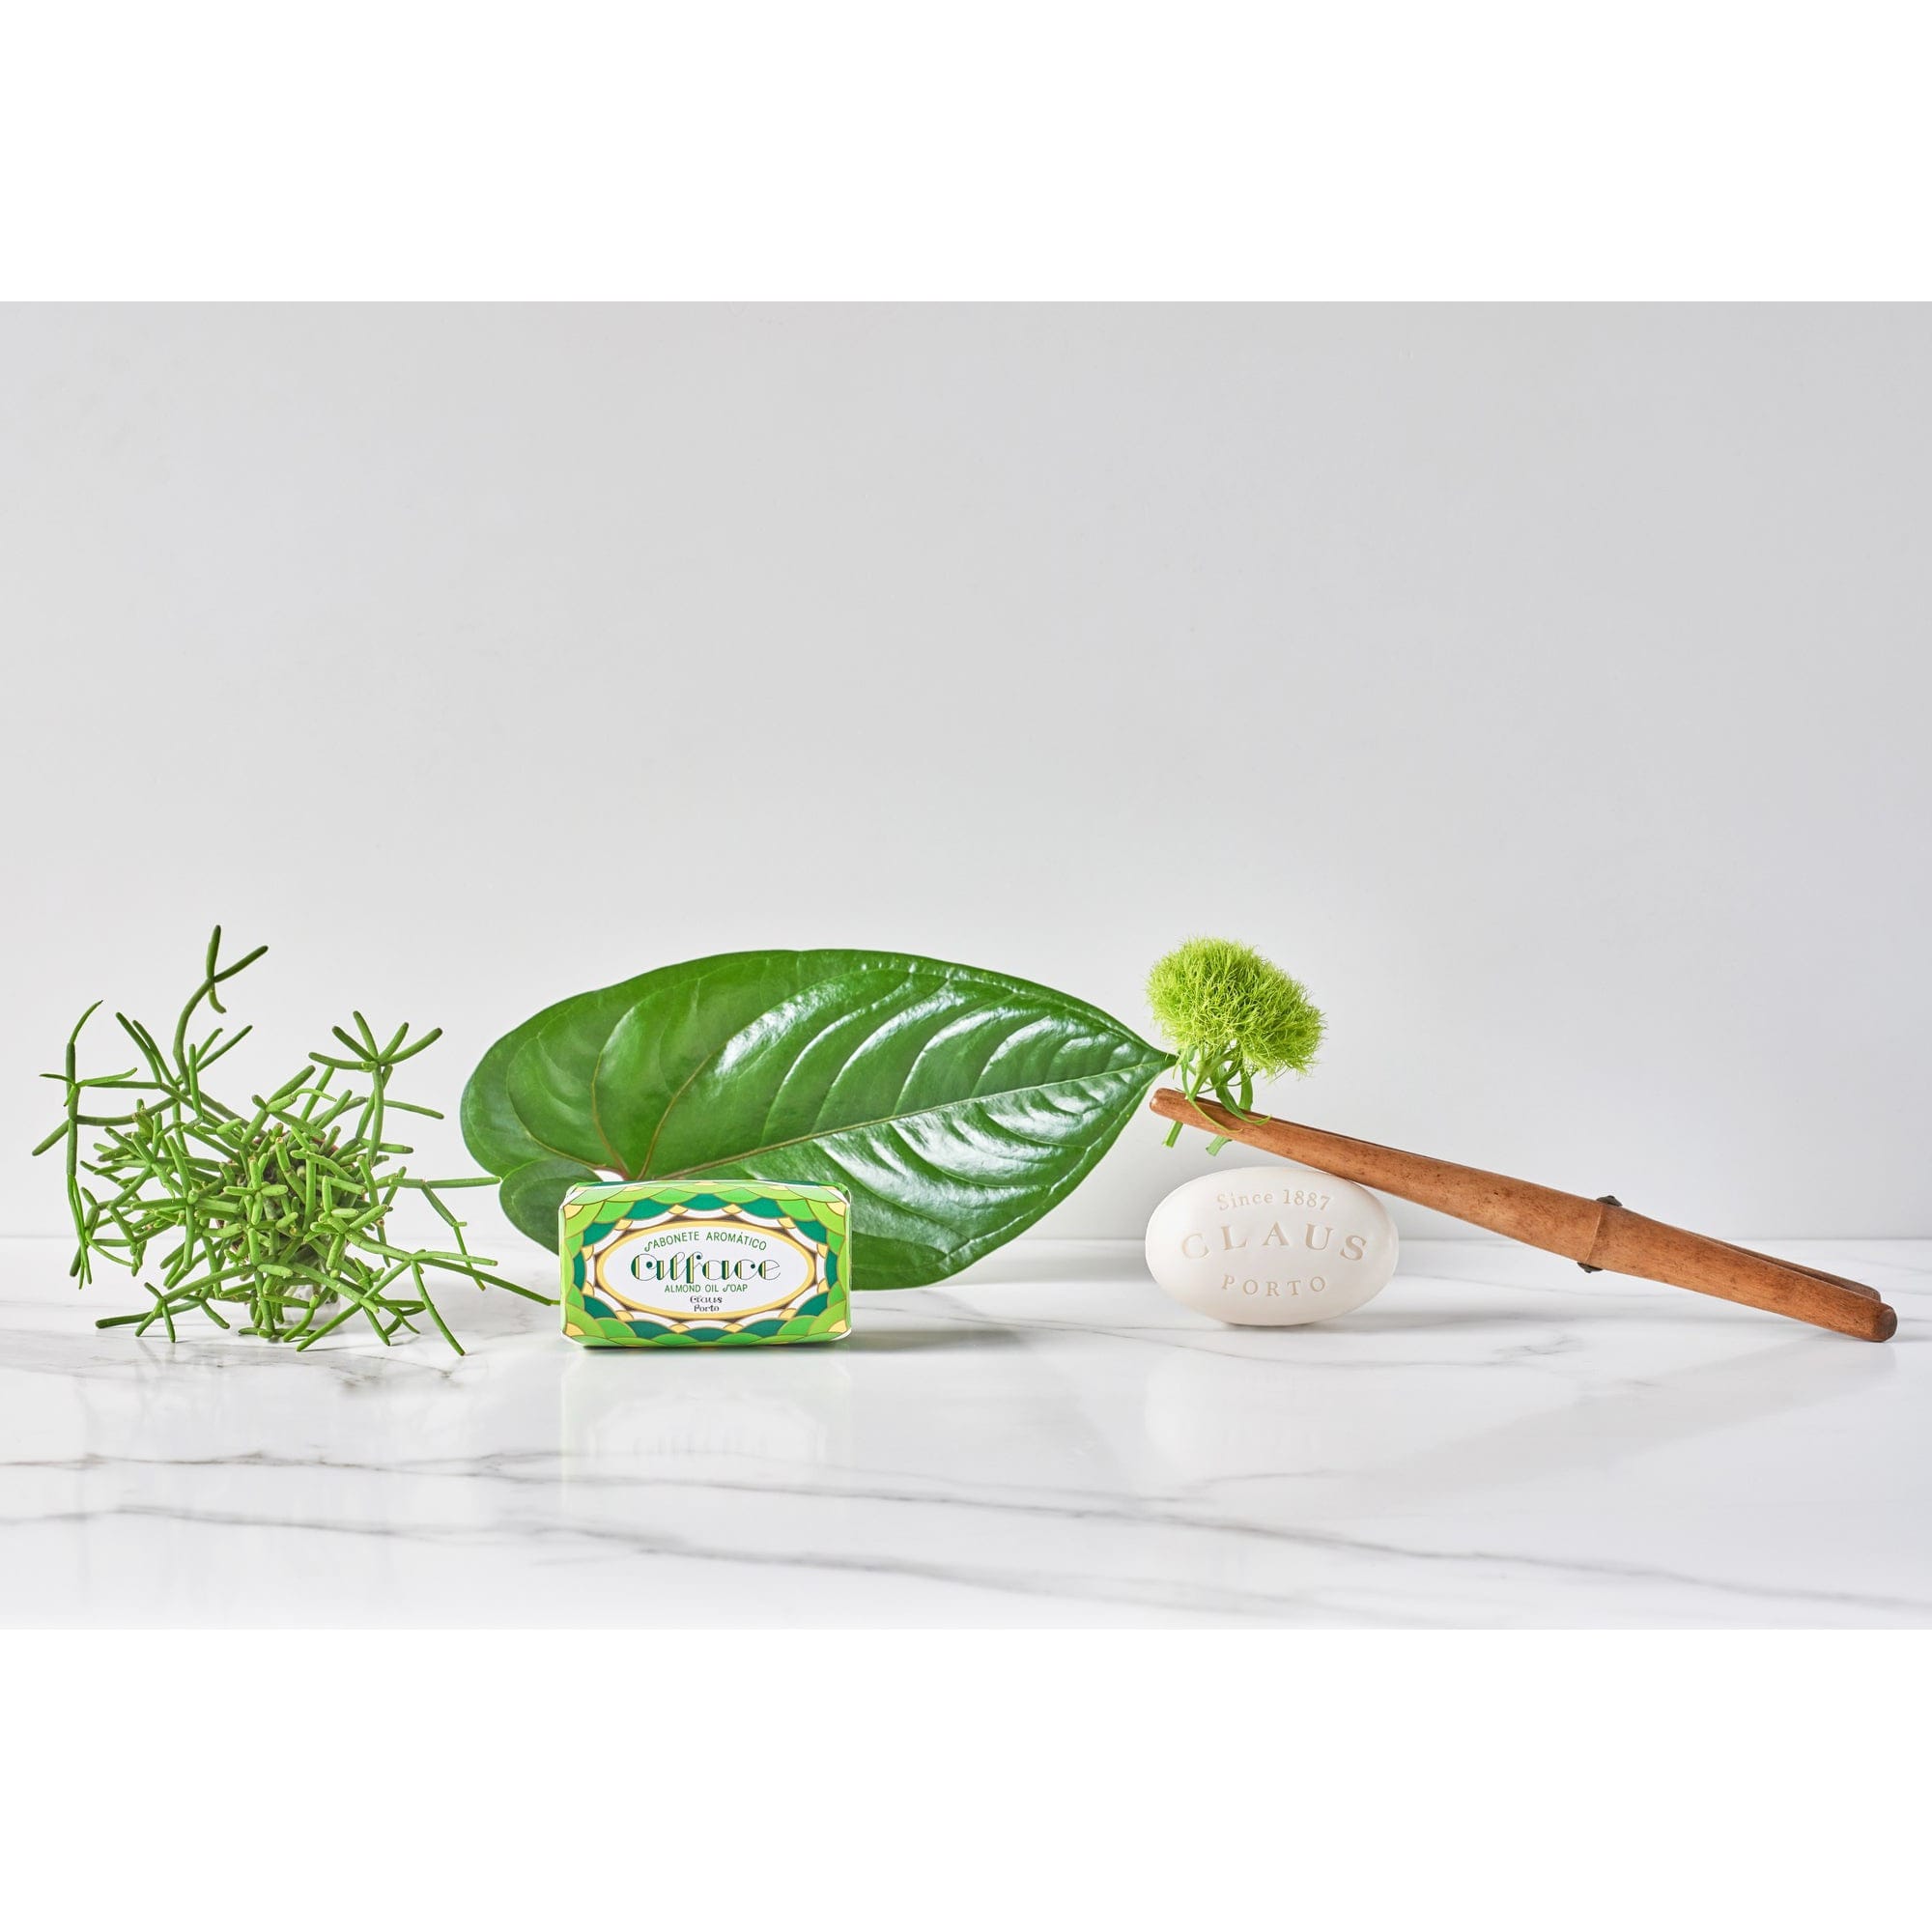 Claus Porto Mini Soap Alface Green Leaf 50g - 3.1 - CP-MS105